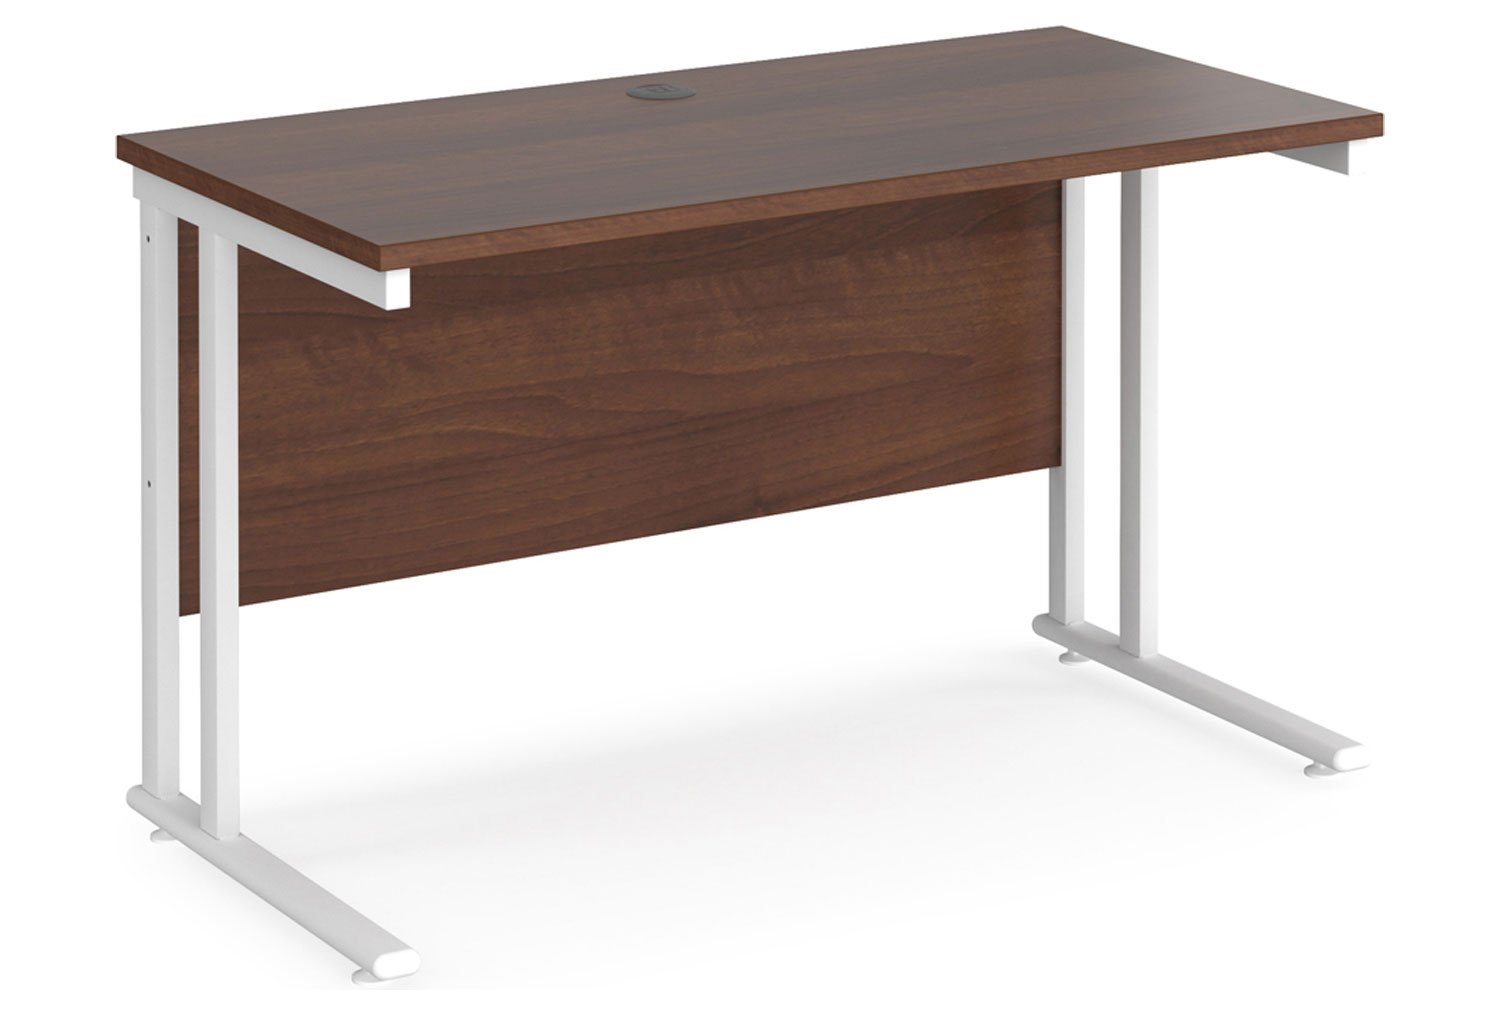 Value Line Deluxe C-Leg Narrow Rectangular Office Desk (White Legs), 120wx60dx73h (cm), Walnut